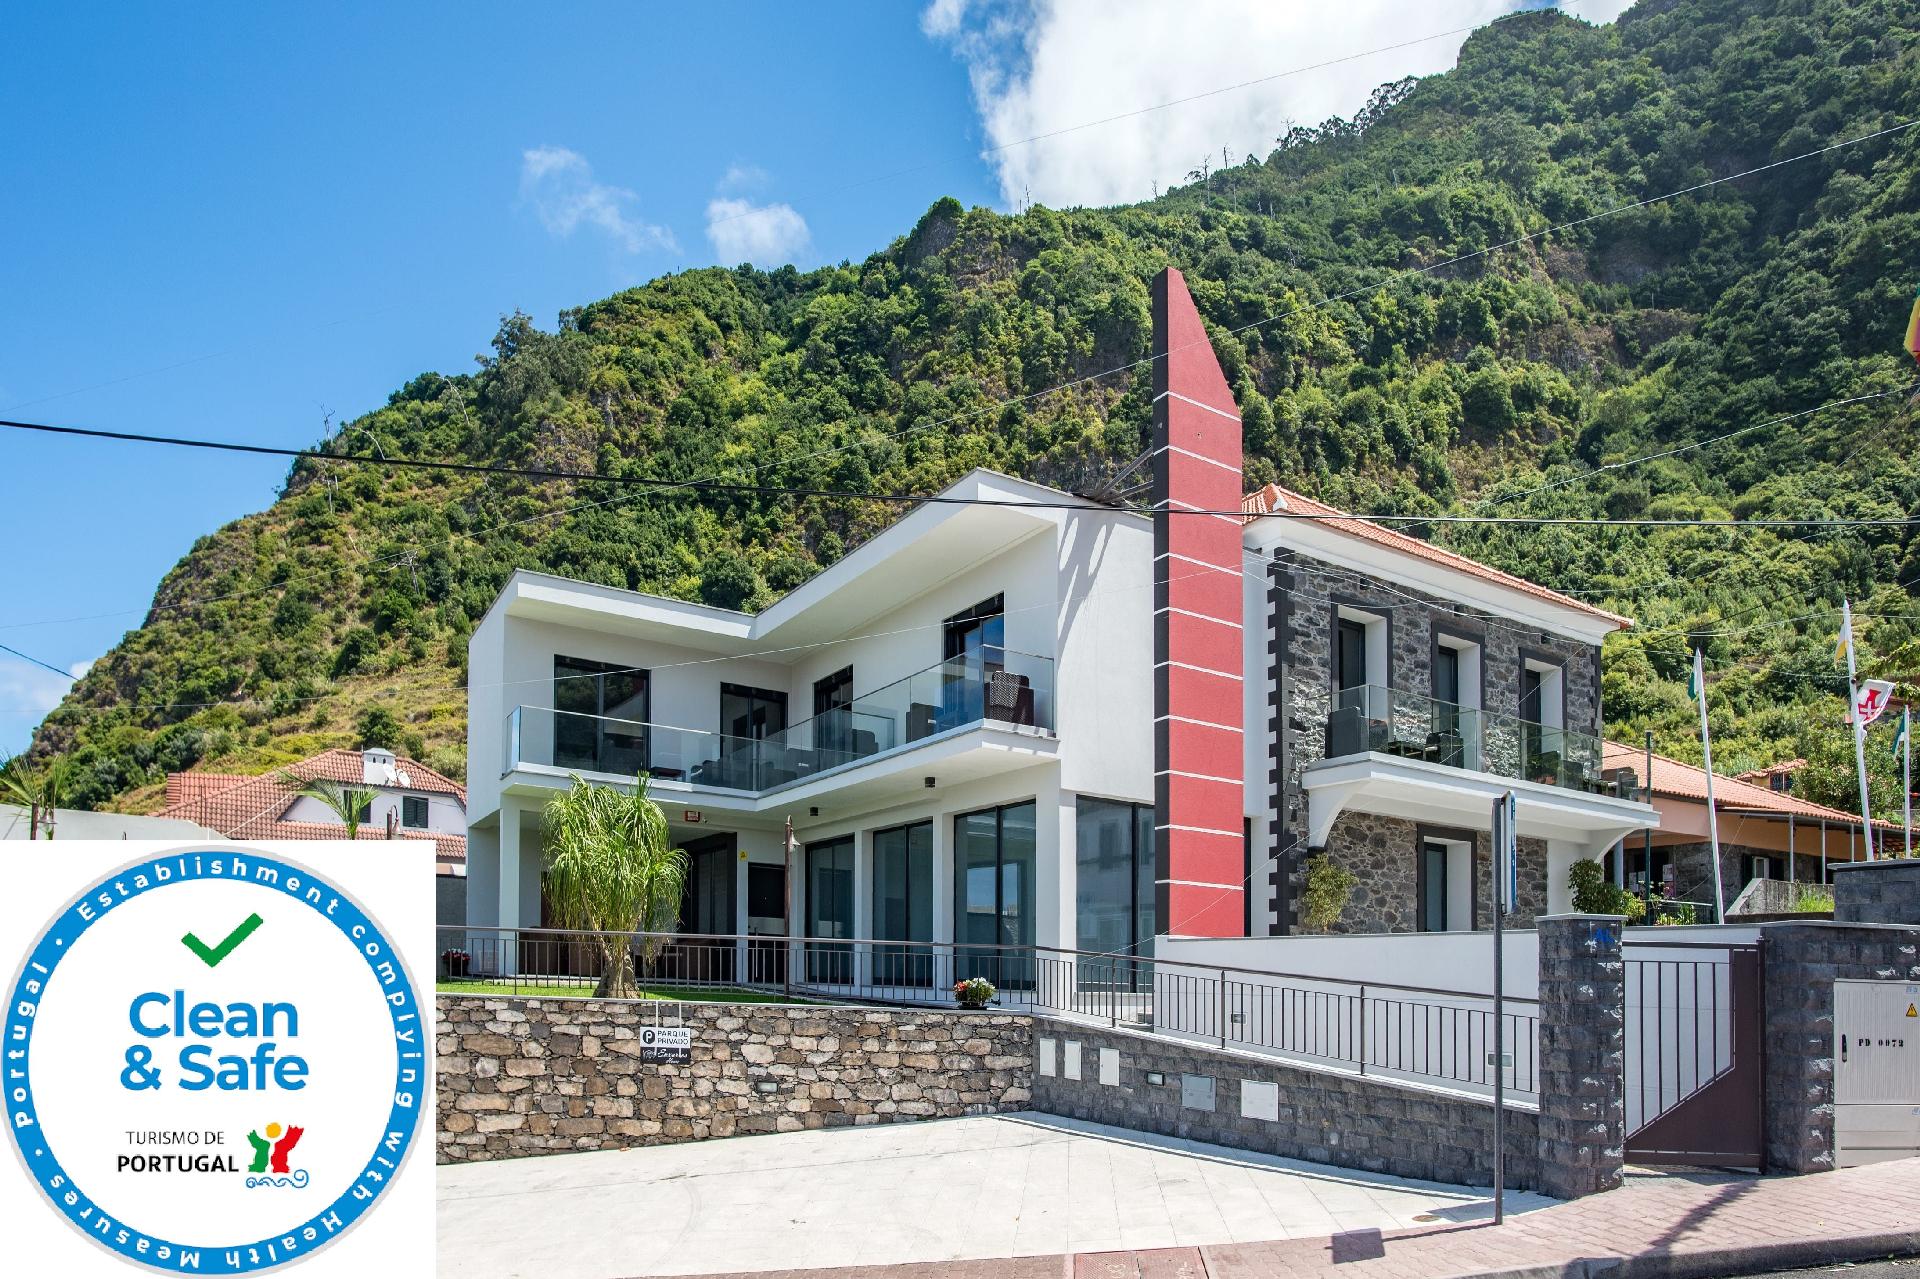 Ferienwohnung für 3 Personen ca. 35 m² i Ferienwohnung auf Madeira